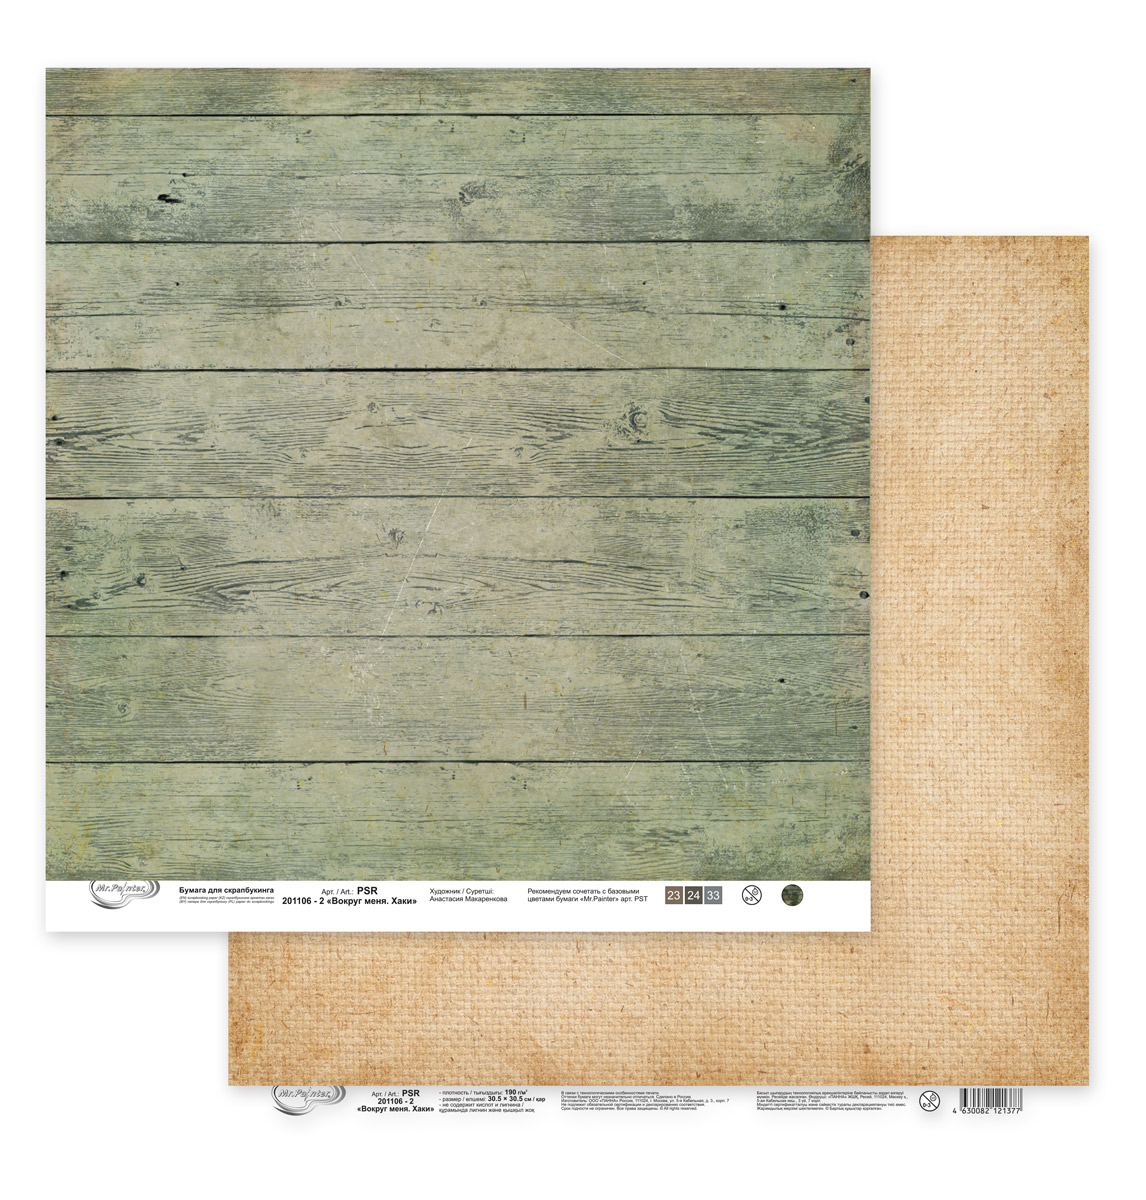 Лист двусторонней бумаги из коллекции  "Вокруг меня. Хаки" от "Mr.Painter", PSR-201106-2, 190 г/кв.м, 30.5 x 30.5 см